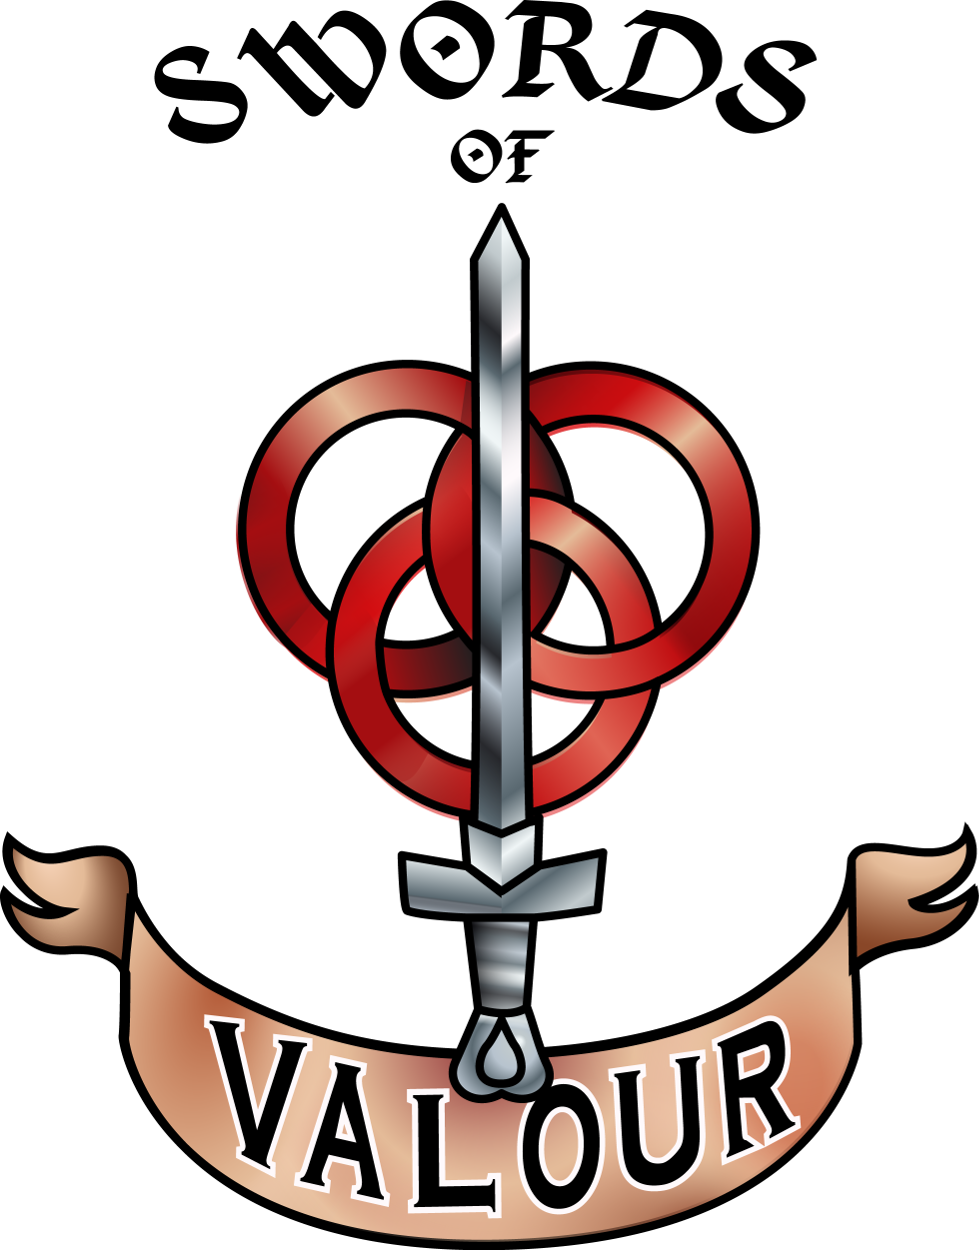 Swords of Valour